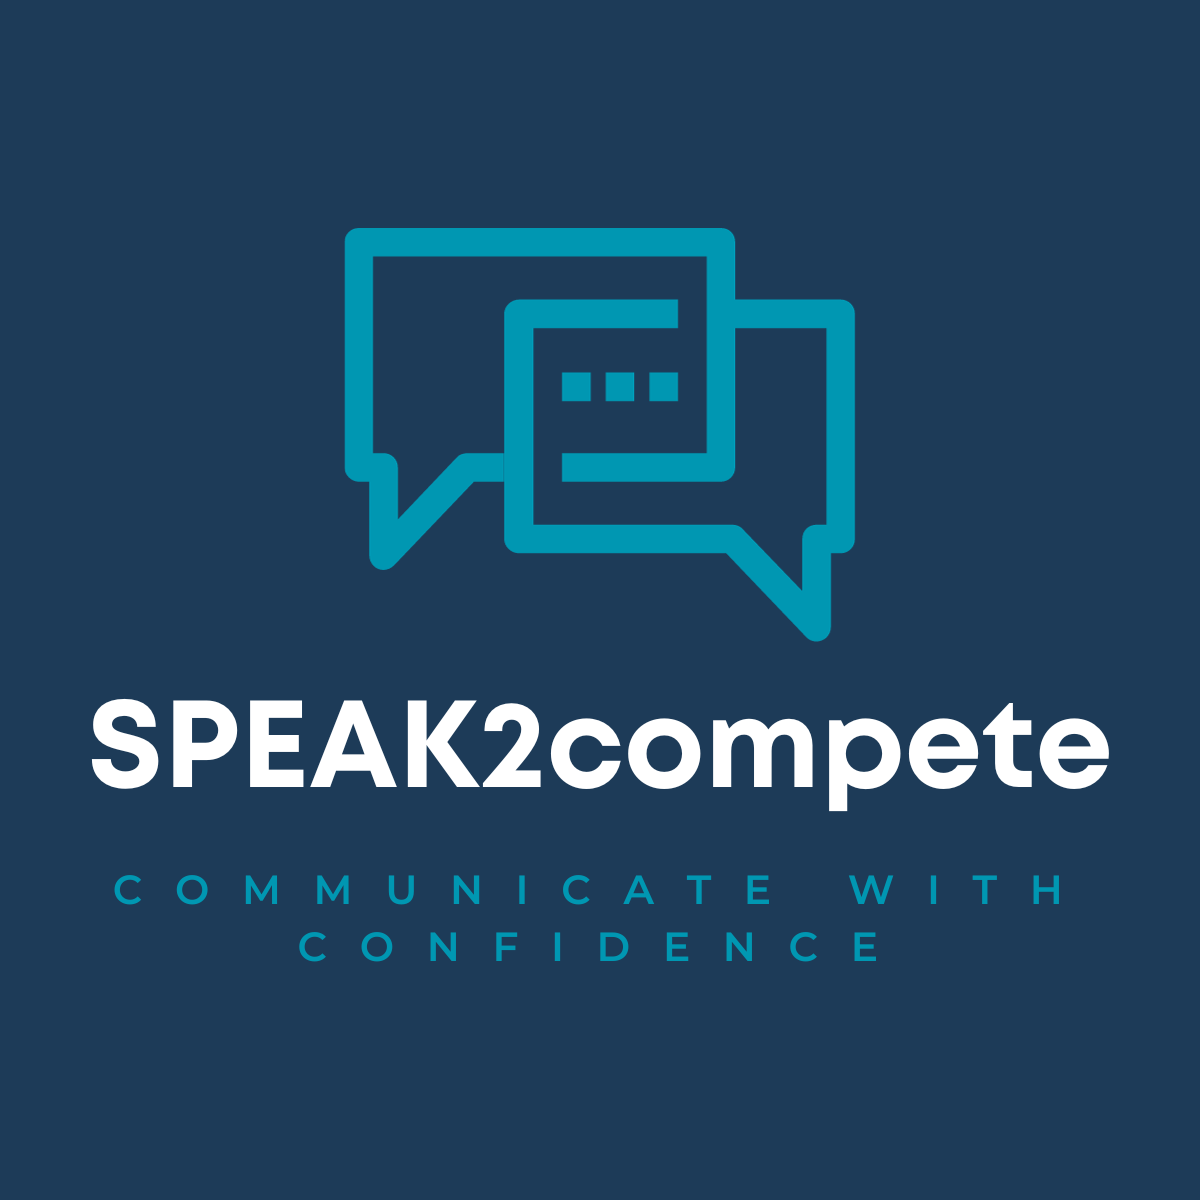 Speak2compete